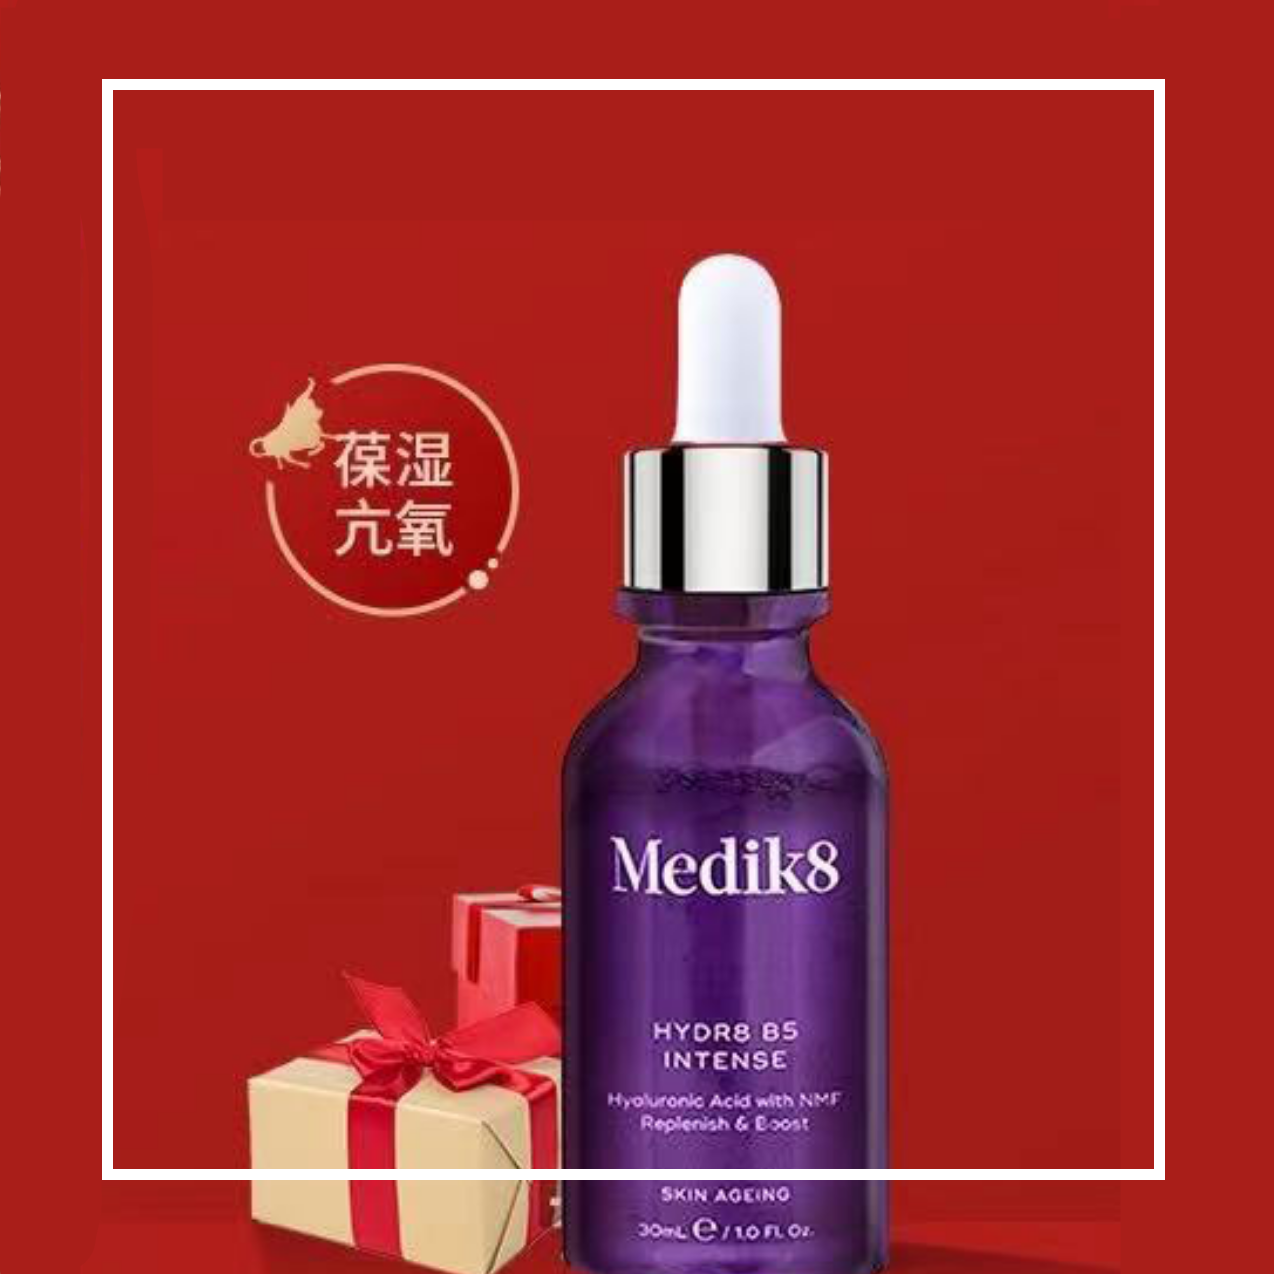 超强小紫瓶！英国院线级产品 Medik8 花青素高能保湿精华 加强版